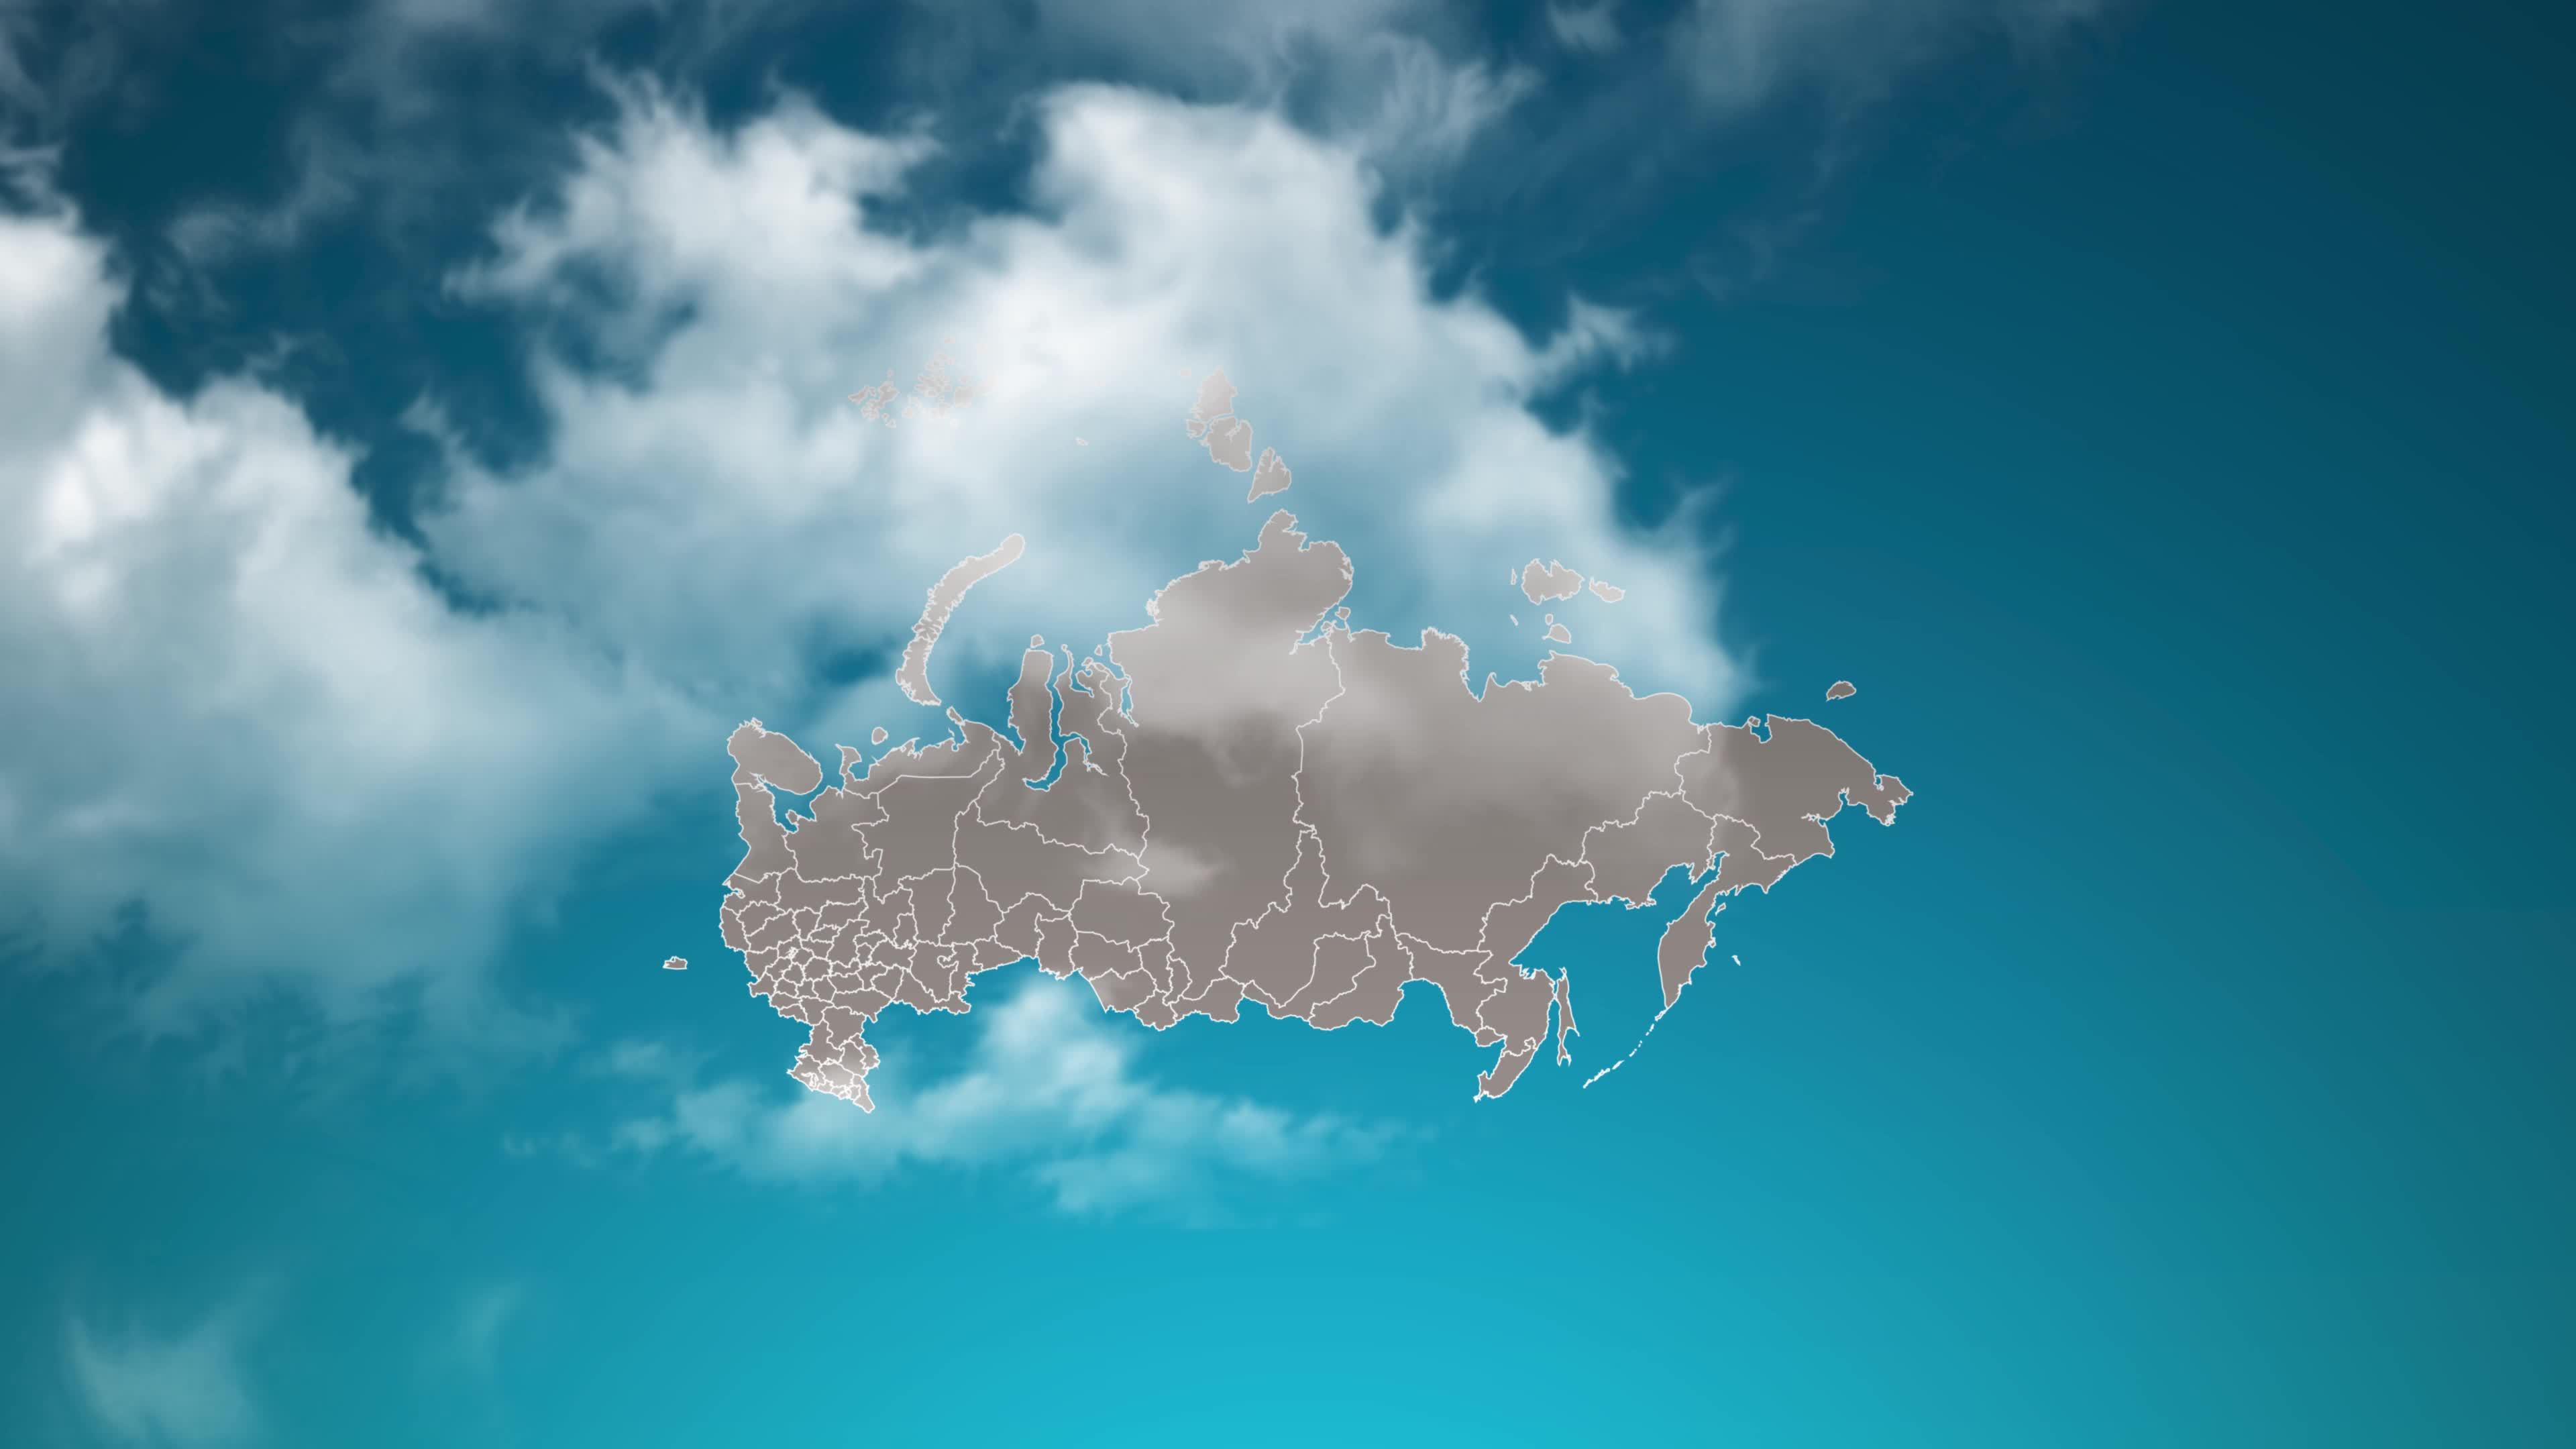 Bản đồ nước Nga (Russia country map): Đắm mình trong bản đồ đầy màu sắc của đất nước Nga, khám phá những địa danh nổi tiếng như Moscow, St. Petersburg hay Hồ Baikal. Trải nghiệm cuộc hành trình kỳ thú xuyên suốt đất nước lớn nhất thế giới này ngay bây giờ!